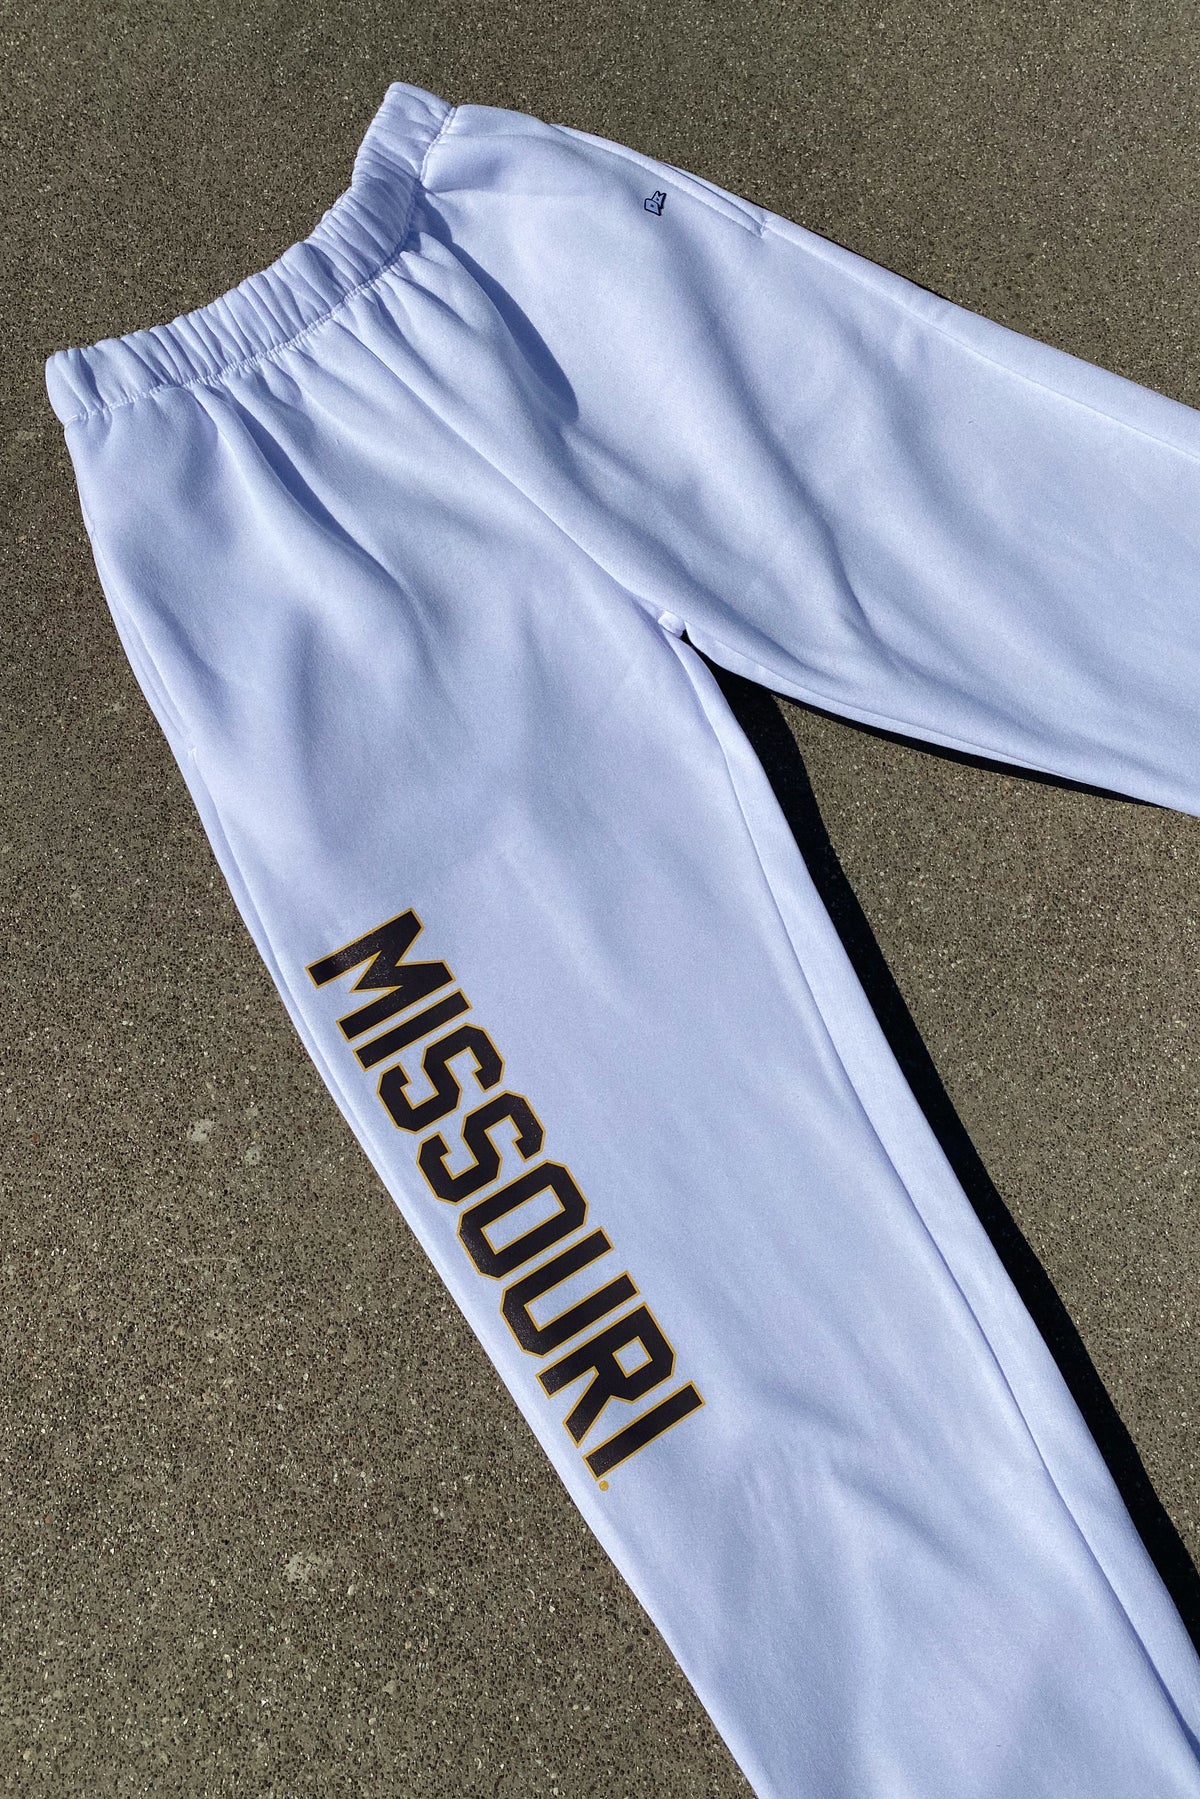 Missouri Basic Sweats